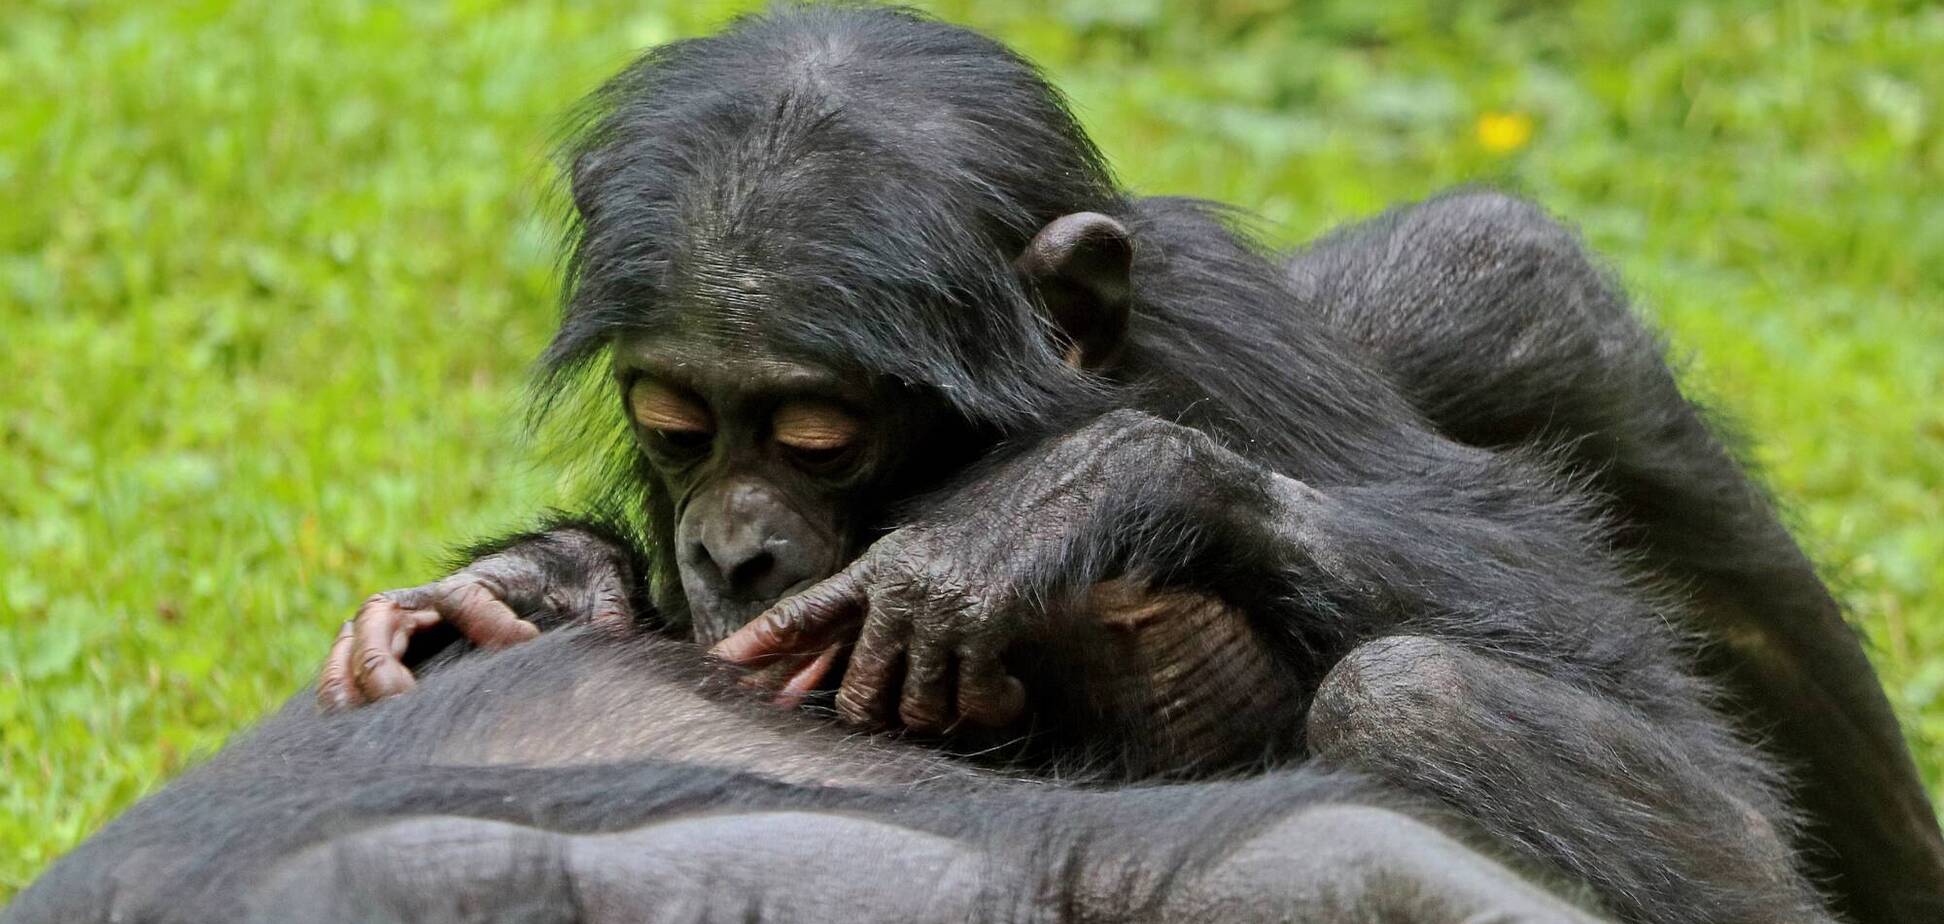 Дослідники вивчили поведінку мавп бонобо, які підтримують унікальну ієрархію і дуже мирний режим в своєму суспільстві